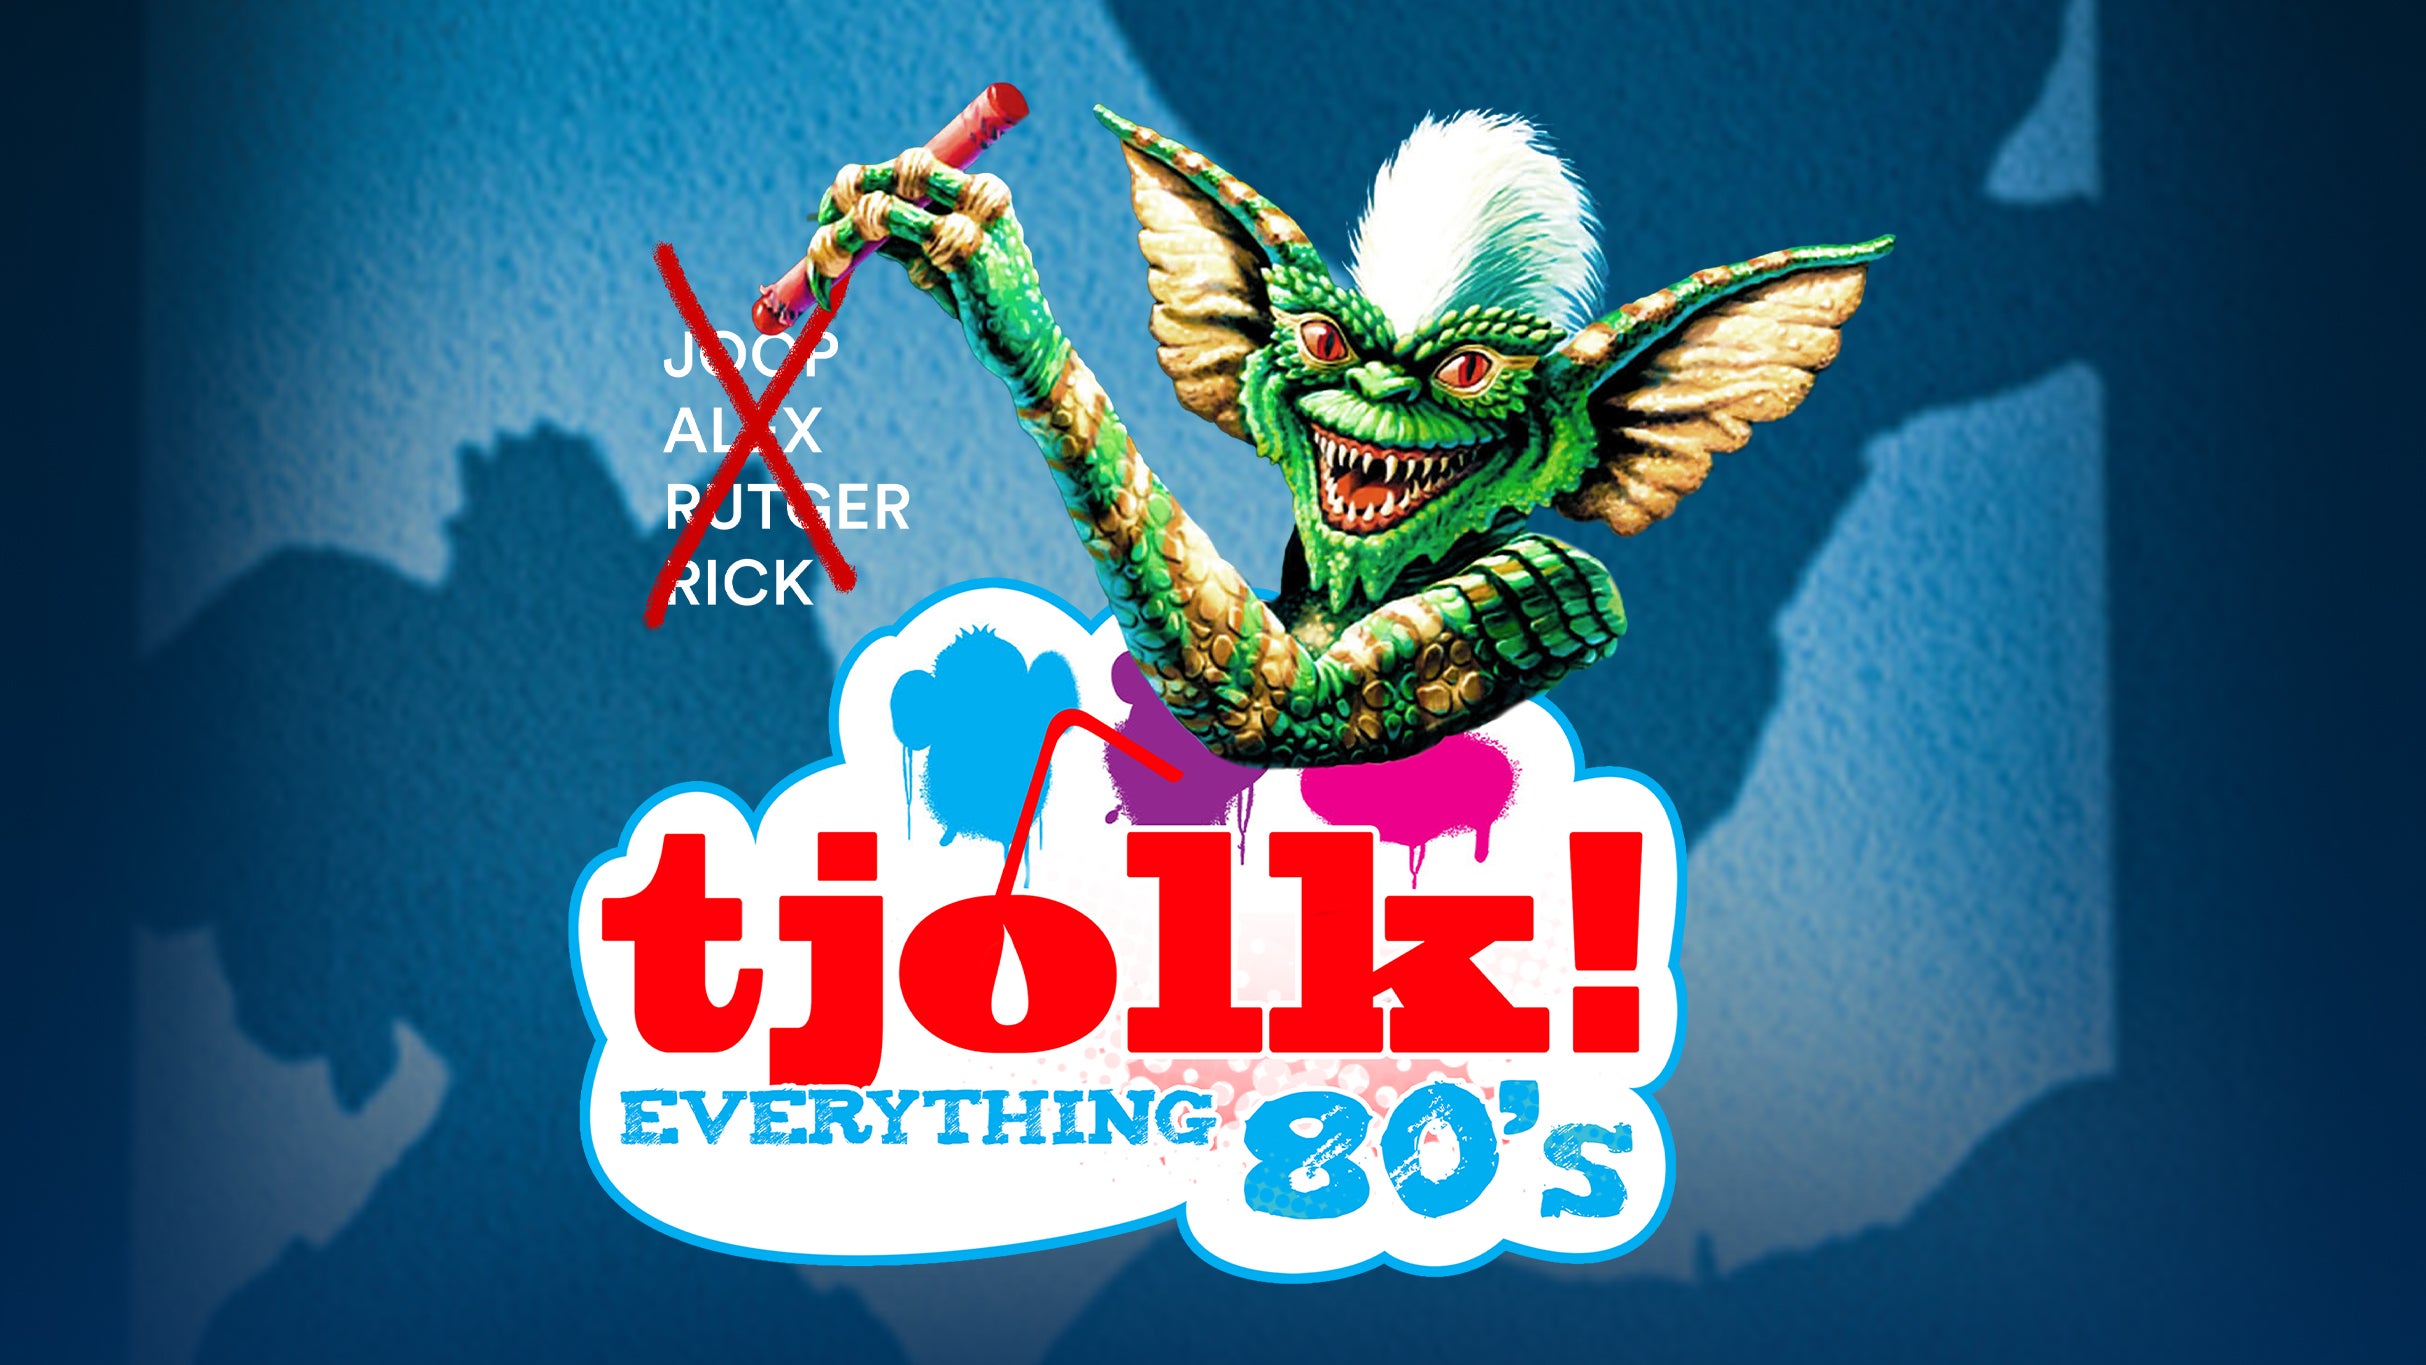 Tjolk! Everything 80's